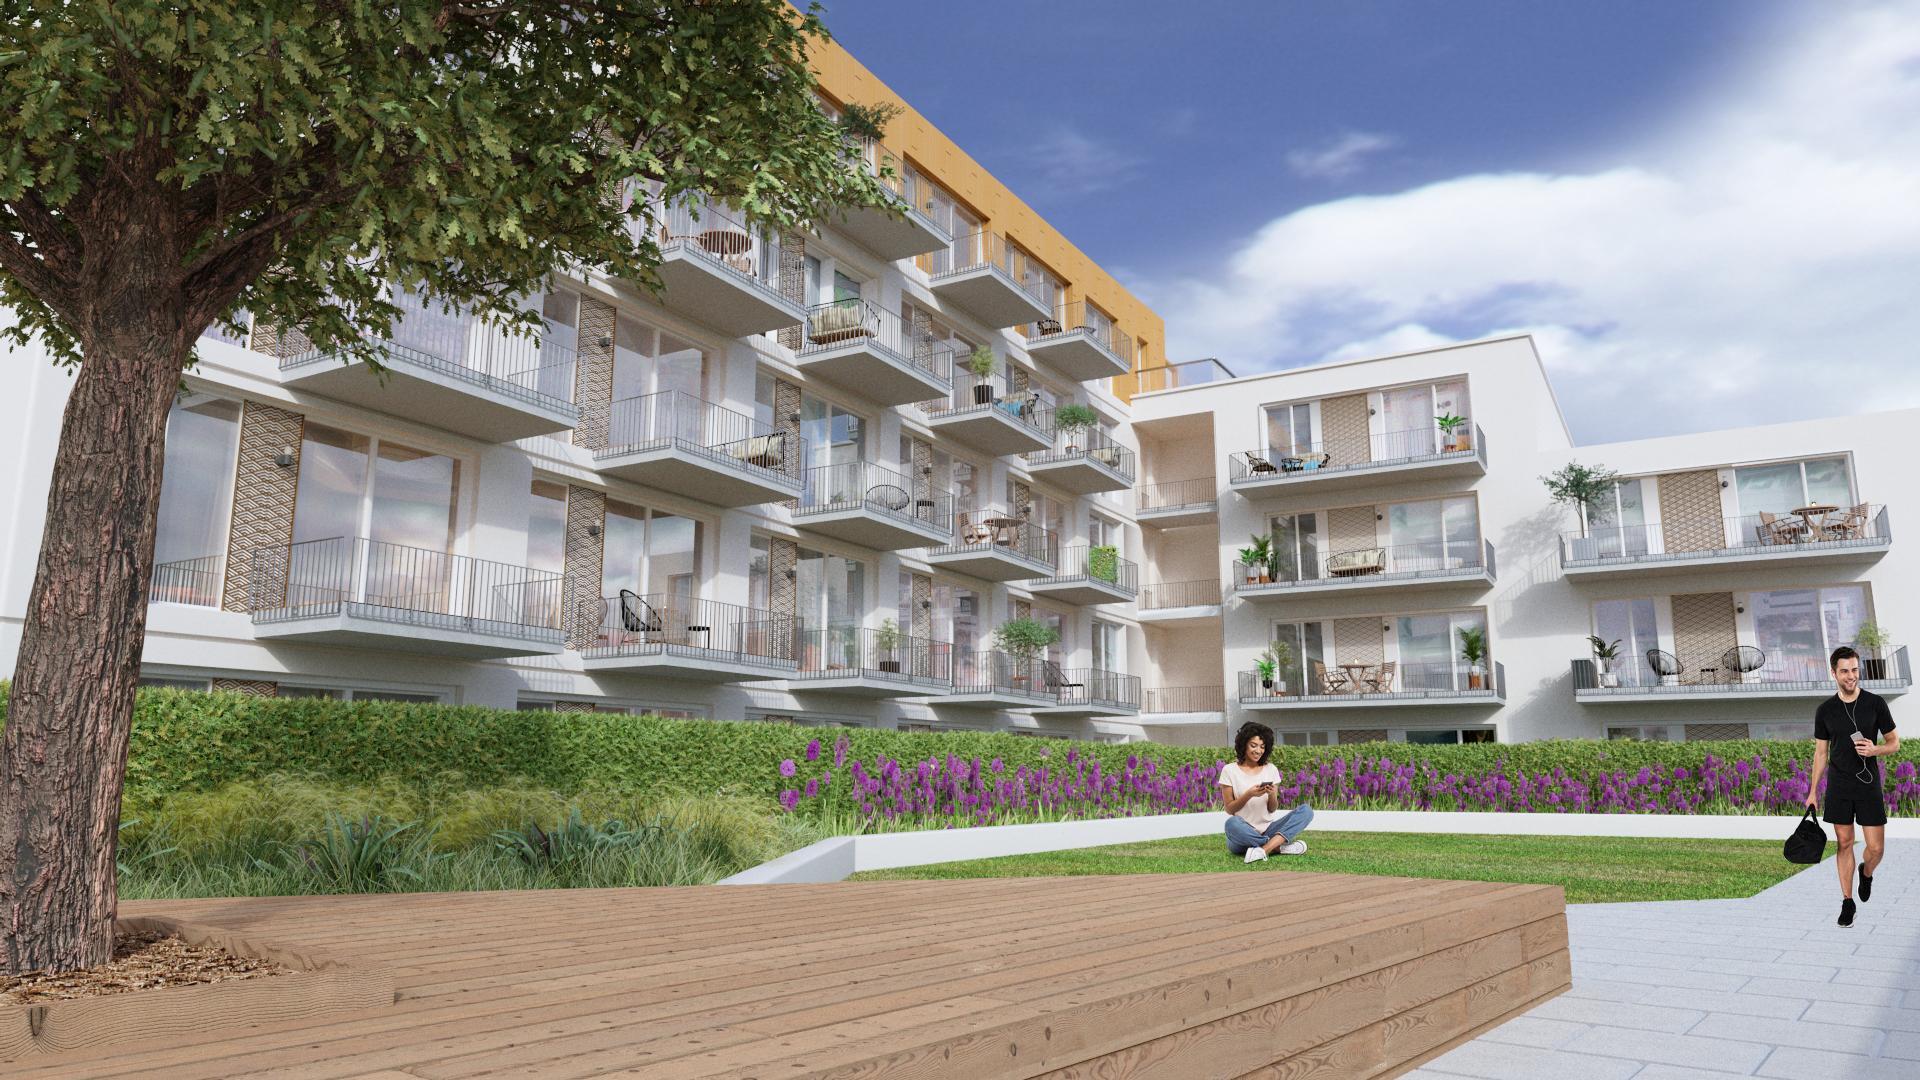 Le Masurier reveals 'Merchants Square' new development plans - Channel Eye